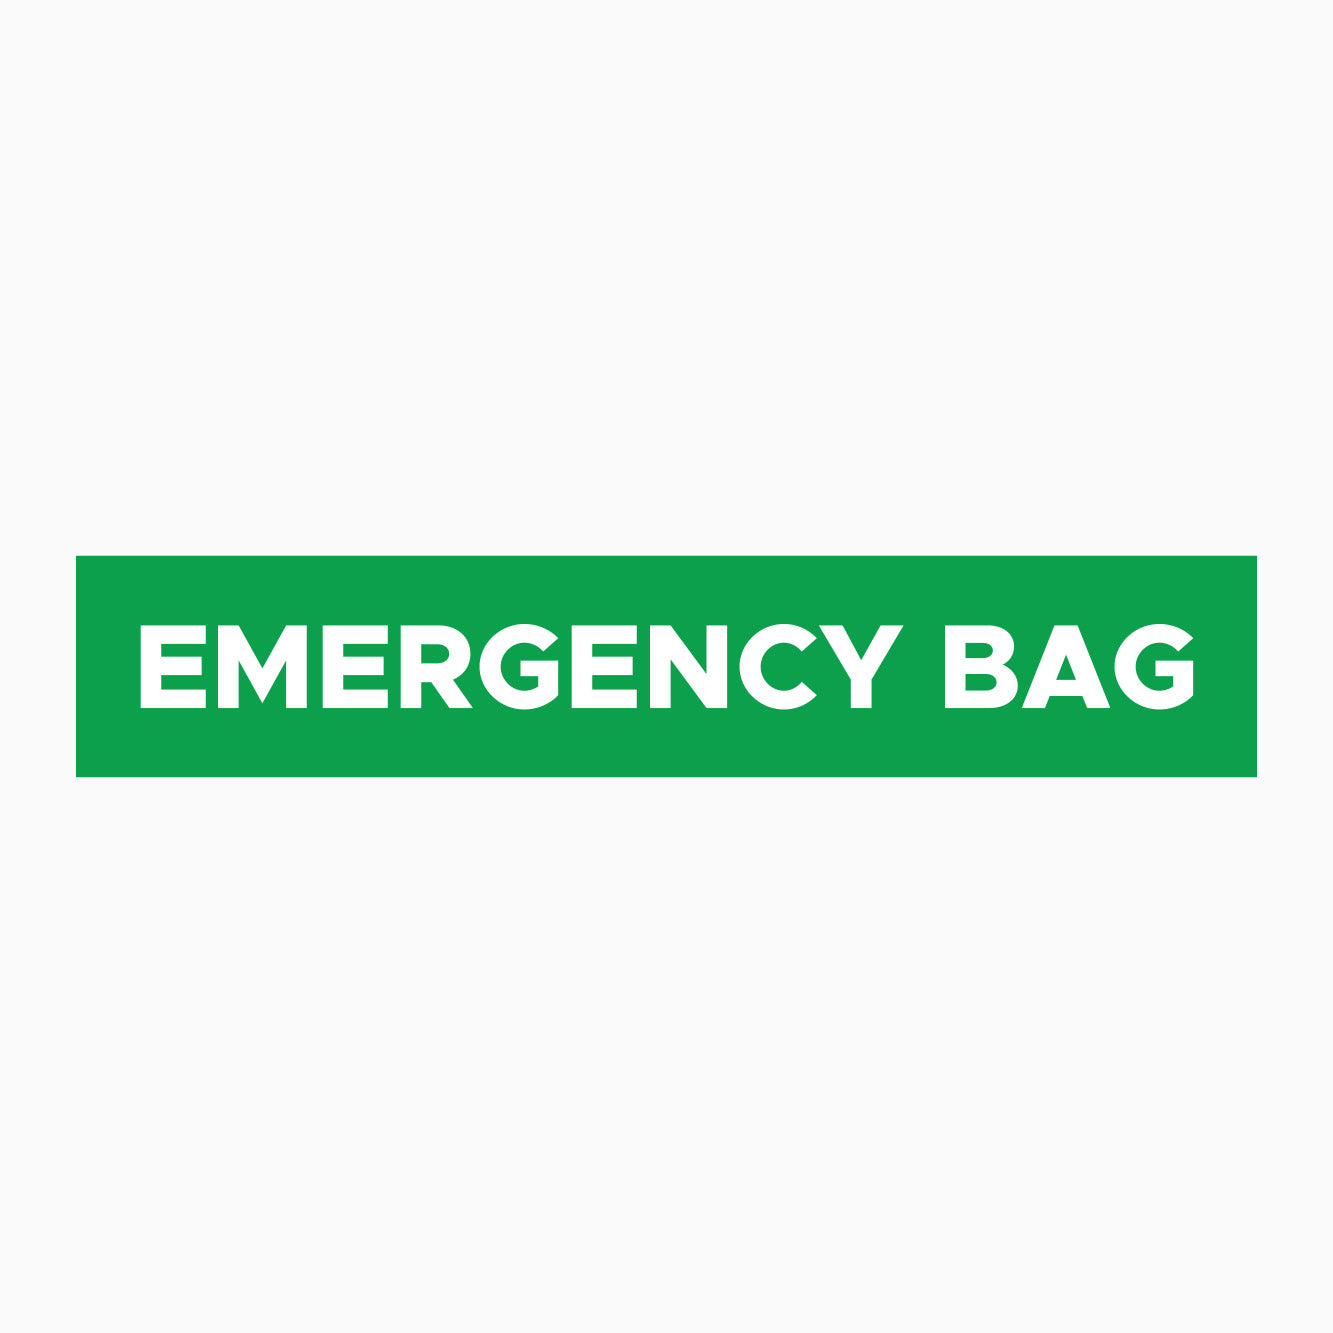 EMERGENCY BAG SIGN